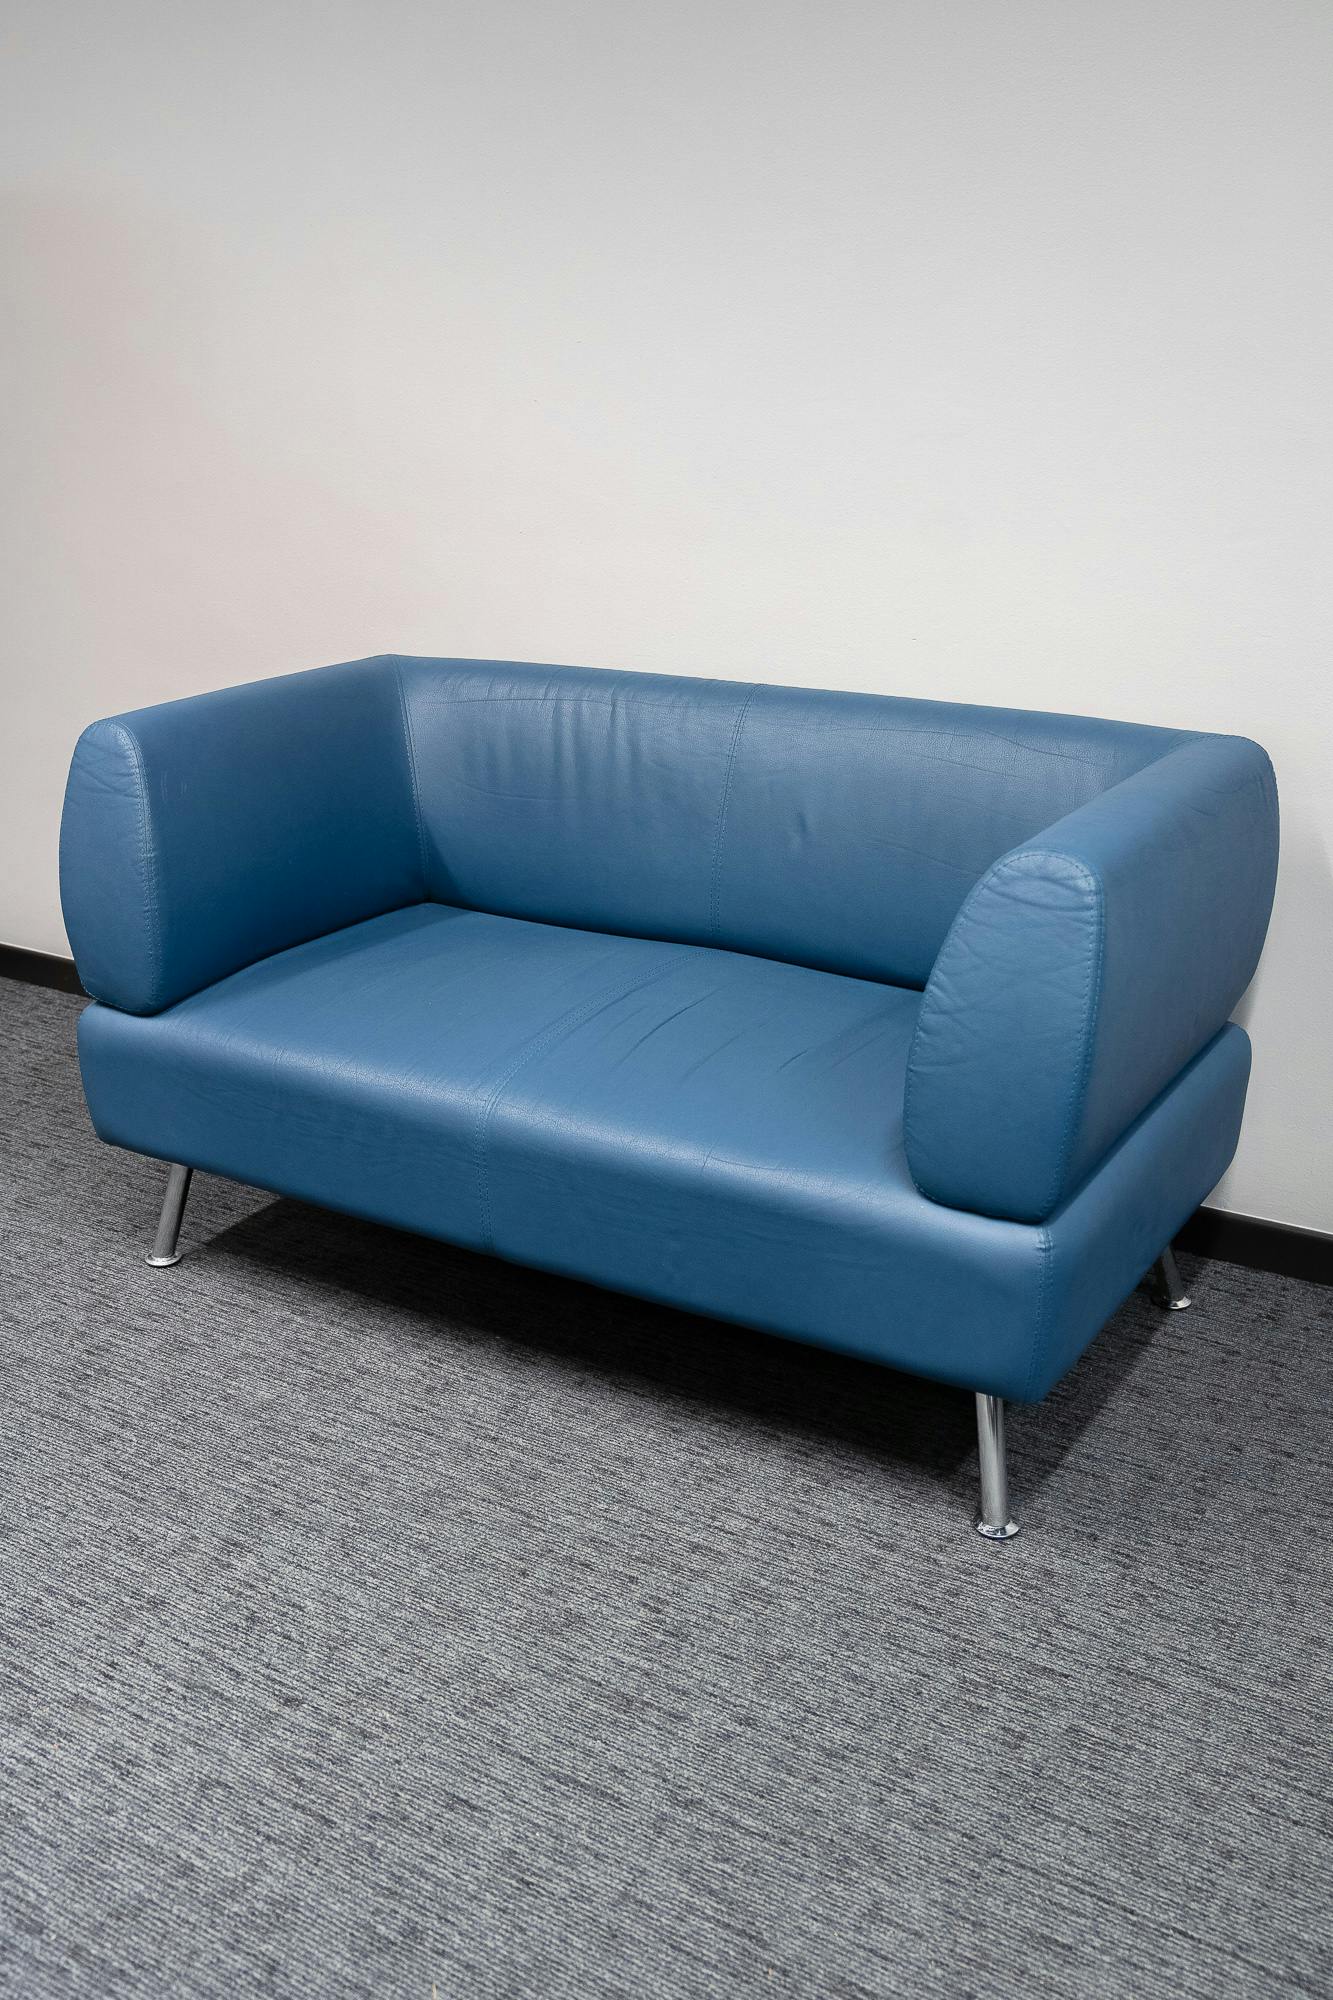 Vintage blauw-grijze leren bank - Tweedehands kwaliteit "Leunstoelen en luiers" - Relieve Furniture